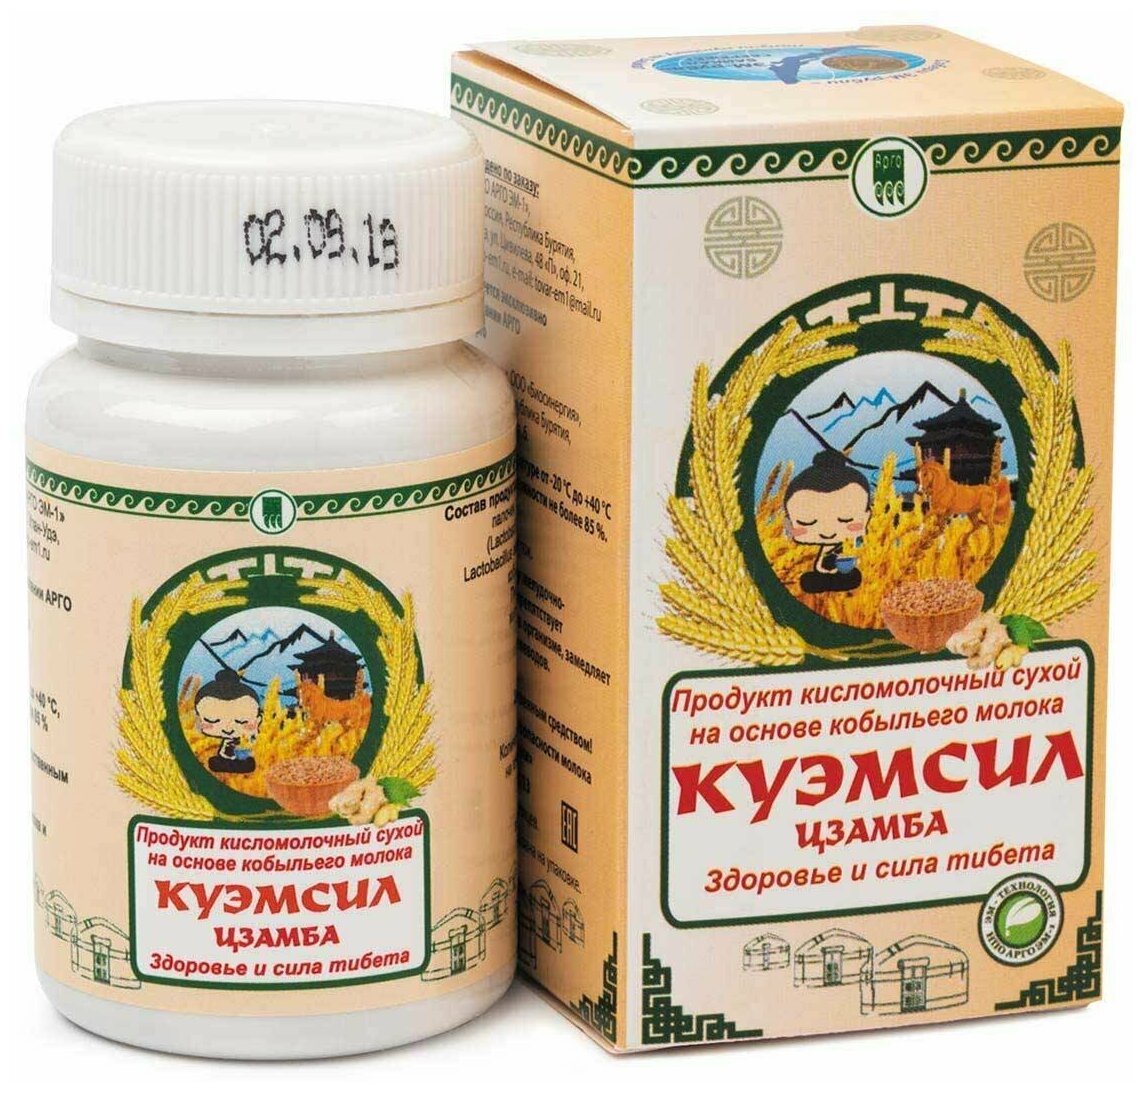 Продукт кисломолочный сухой "КуЭМсил" Цзамба 60 таблеток